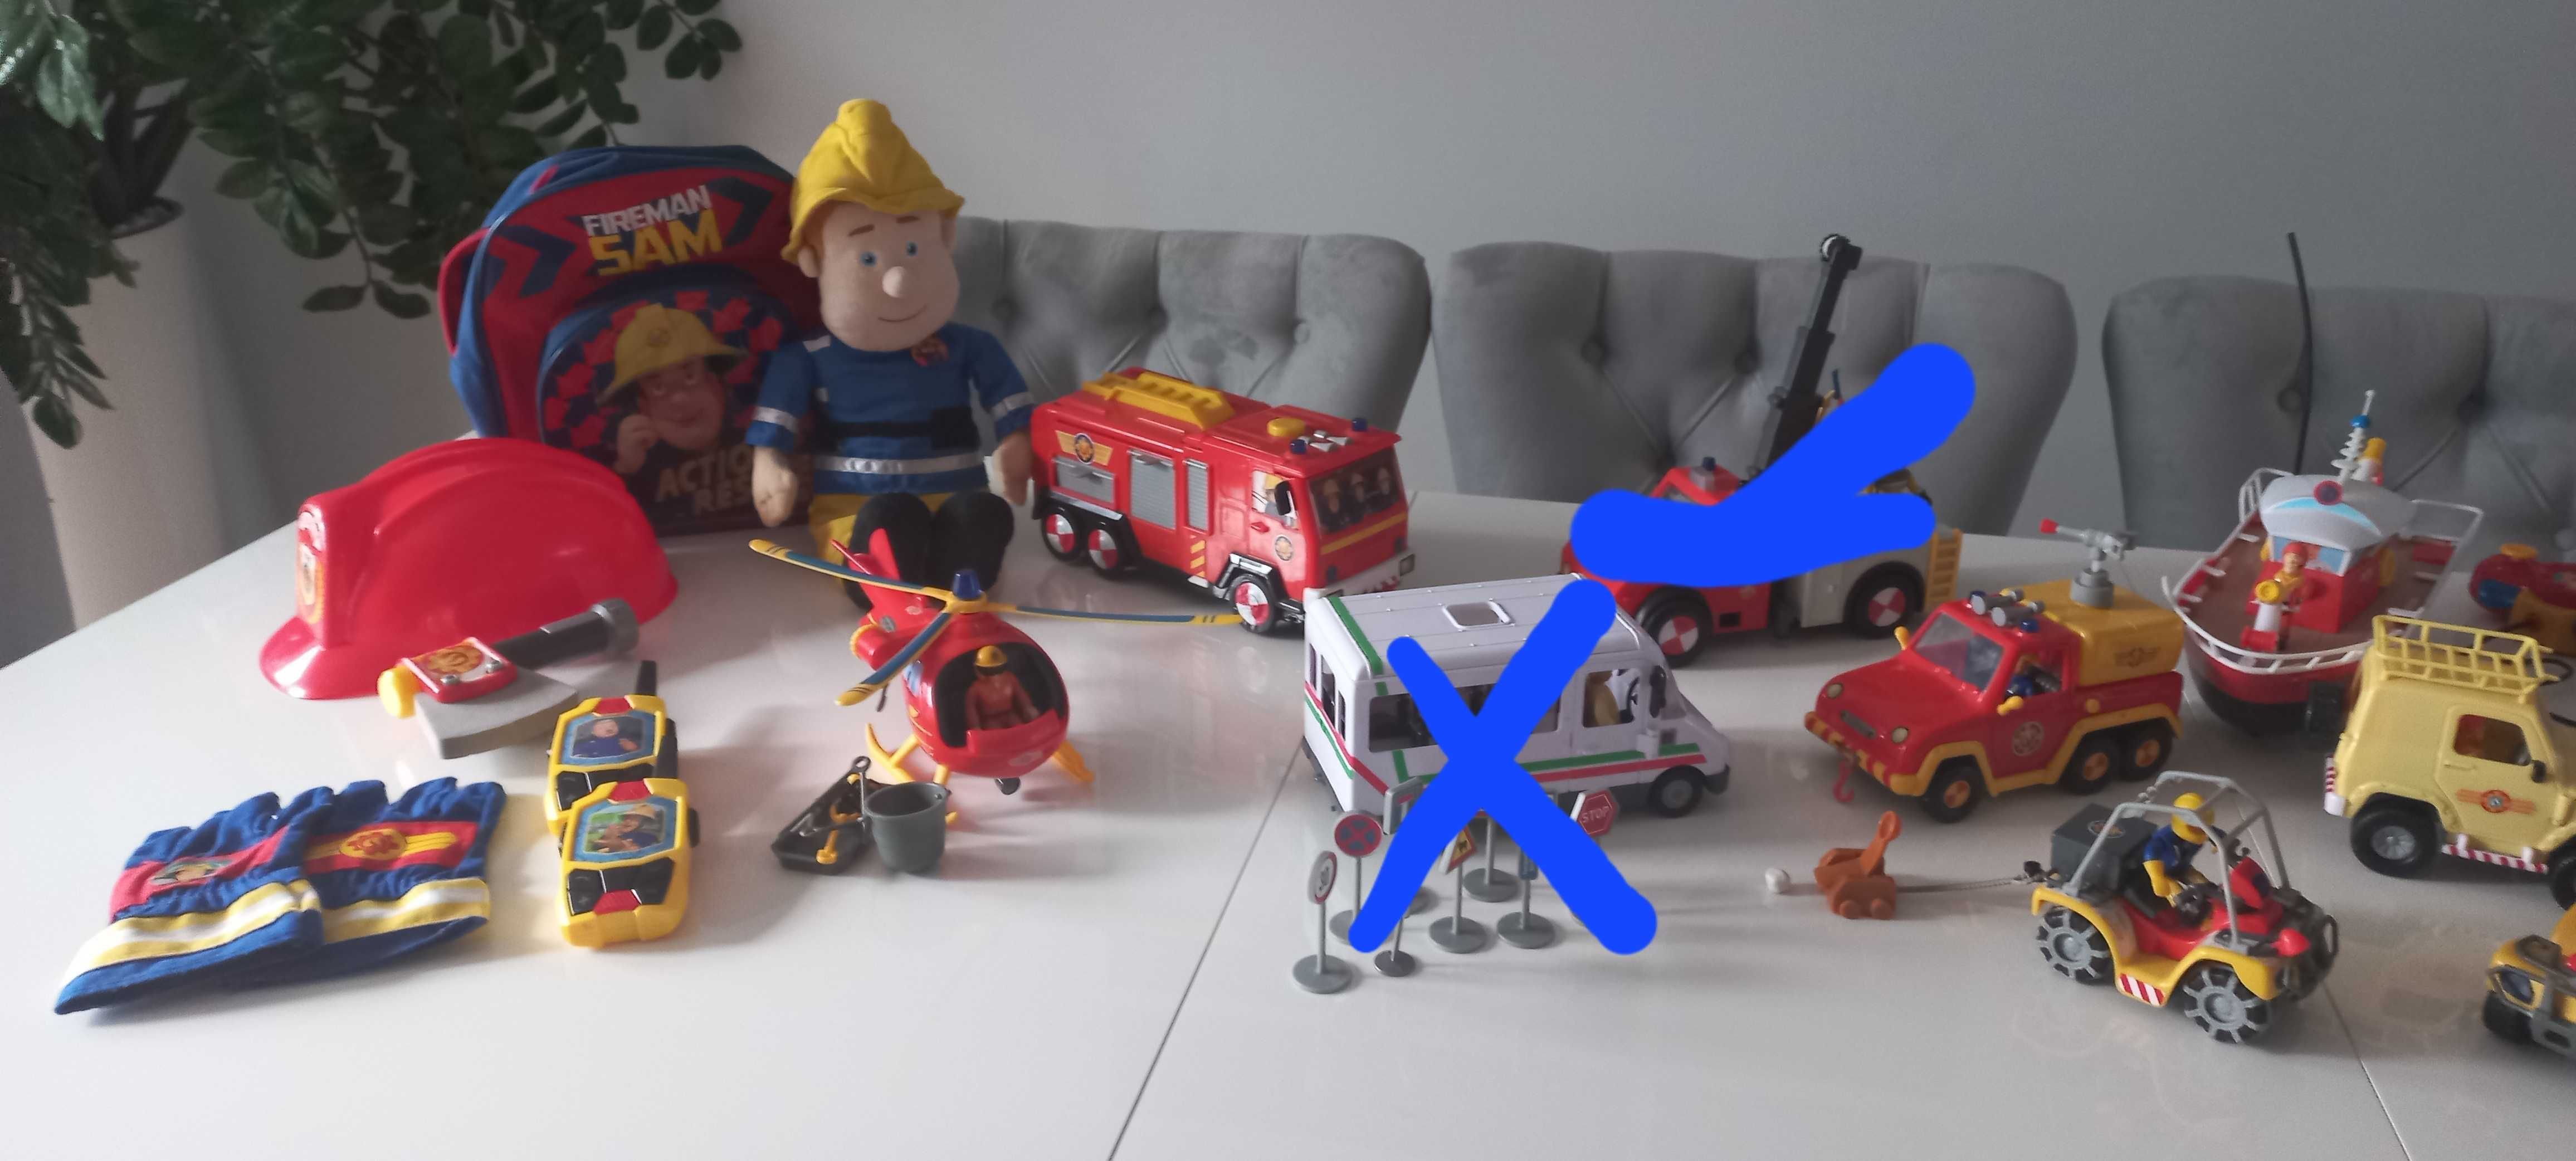 Duży zestaw strażaka Sama, możliwość zakupu jednej zabawki